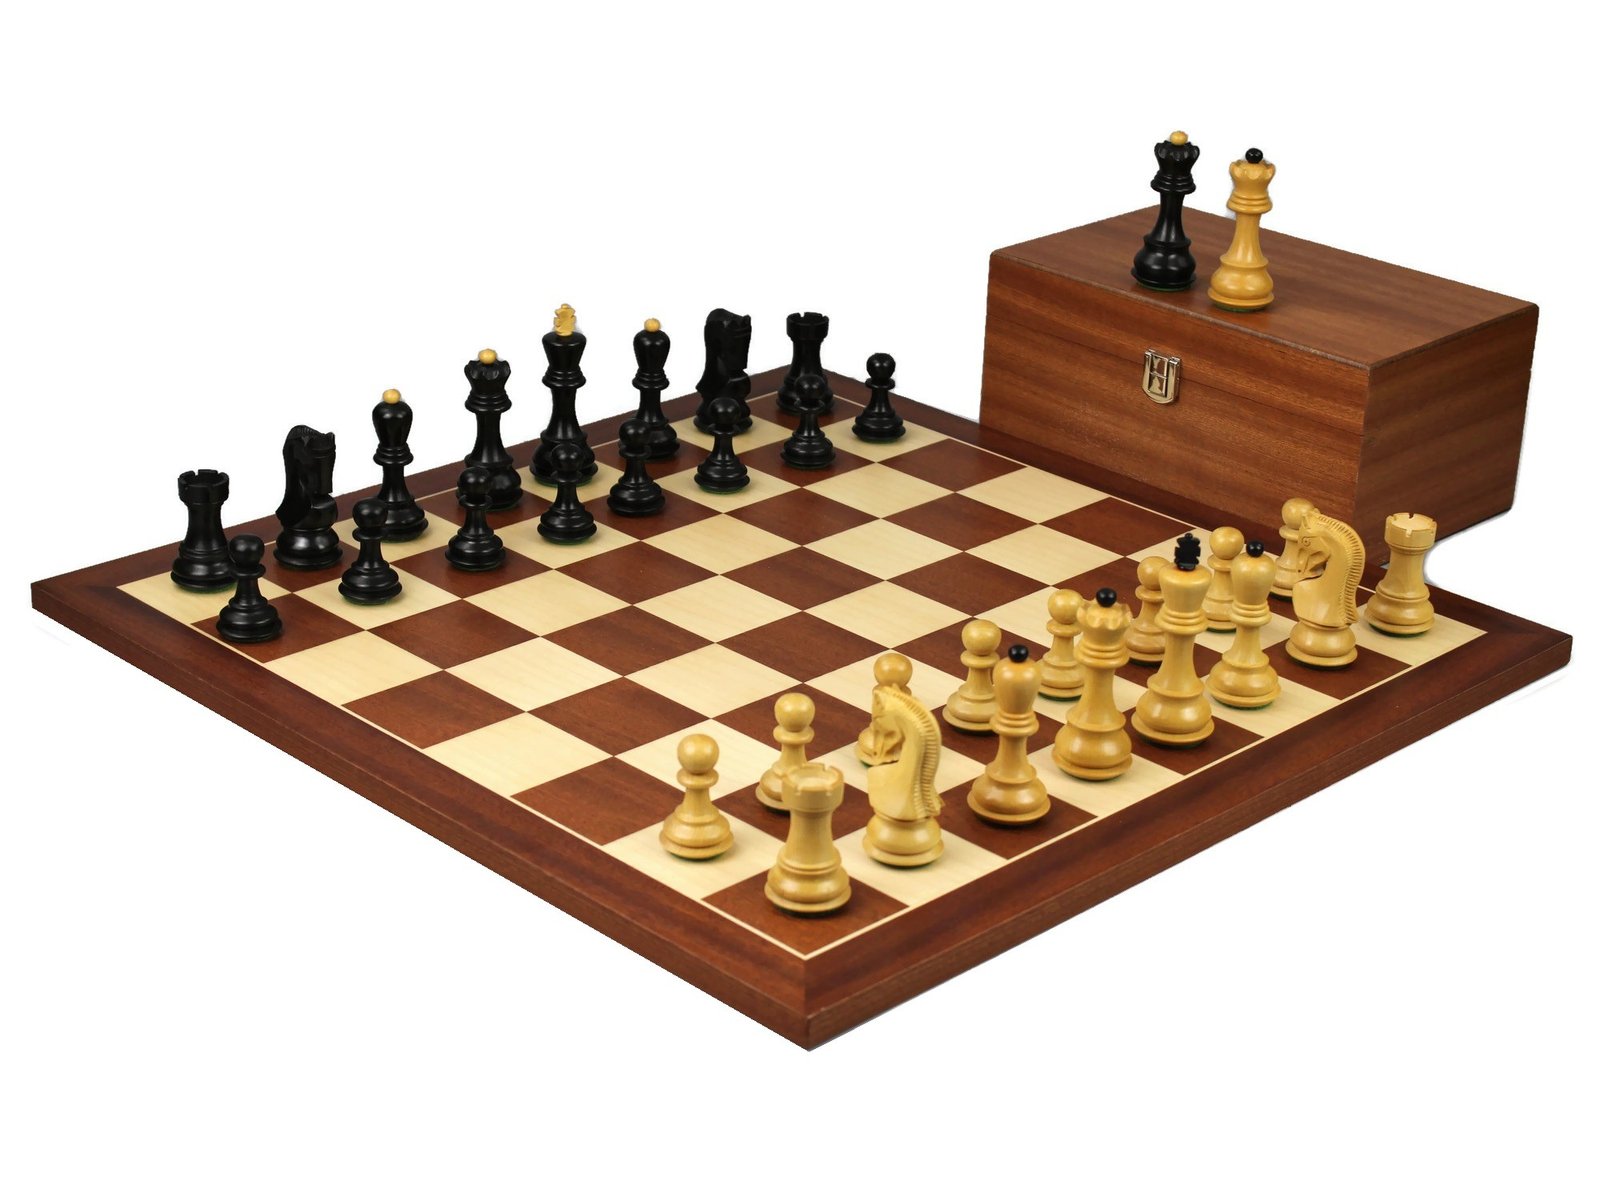 zagreb staunton chess set with mahogany chess board and mahogany chess box